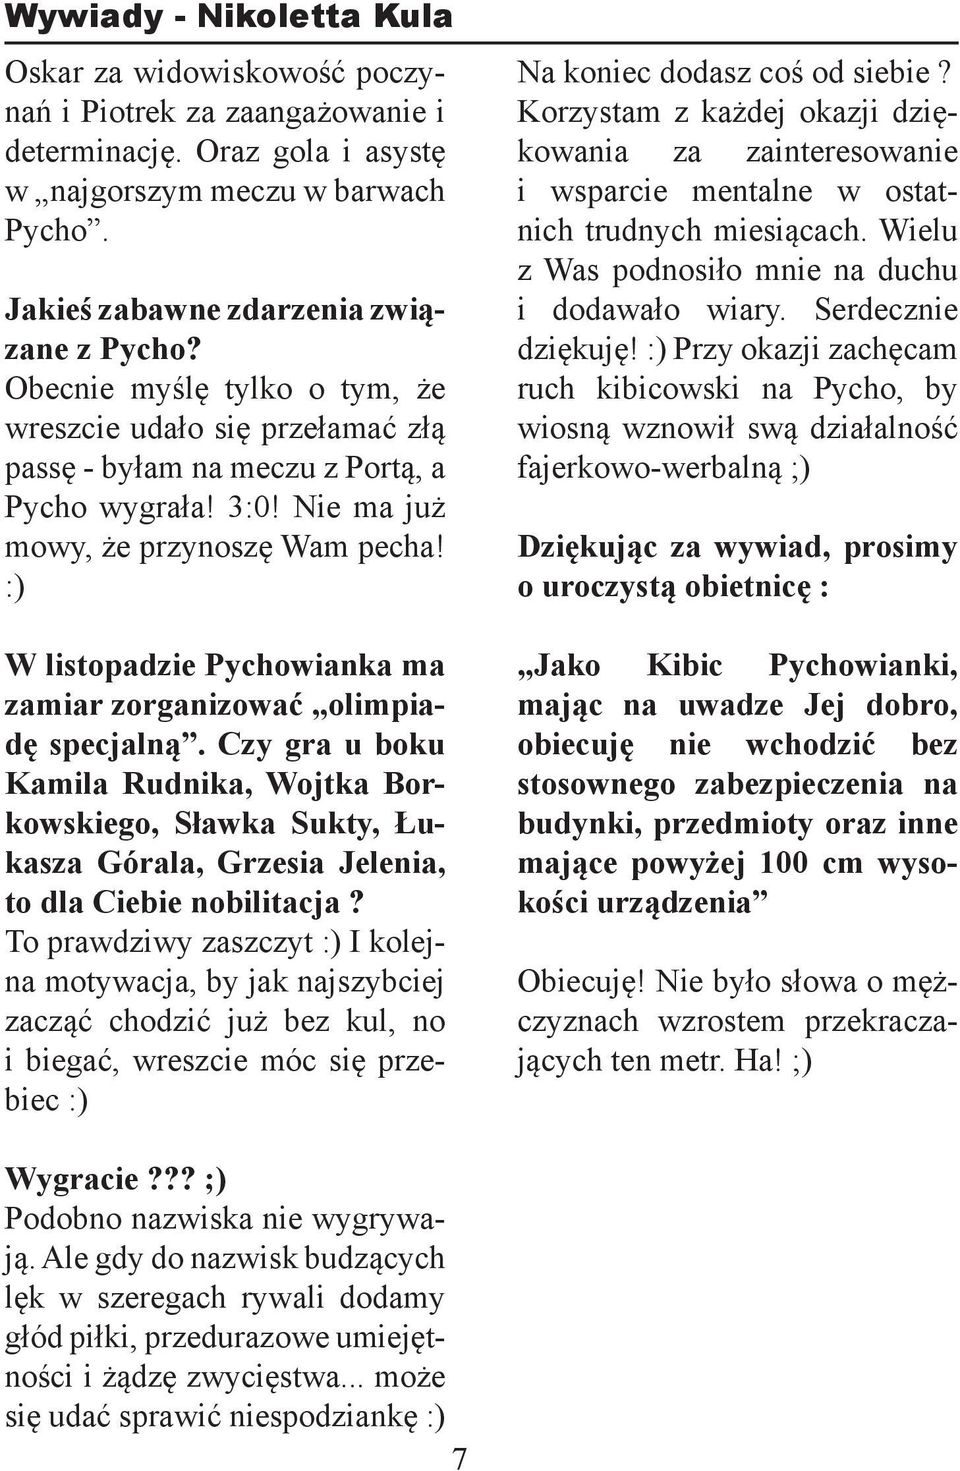 :) W listopadzie Pychowianka ma zamiar zorganizować olimpiadę specjalną. Czy gra u boku Kamila Rudnika, Wojtka Borkowskiego, Sławka Sukty, Łukasza Górala, Grzesia Jelenia, to dla Ciebie nobilitacja?